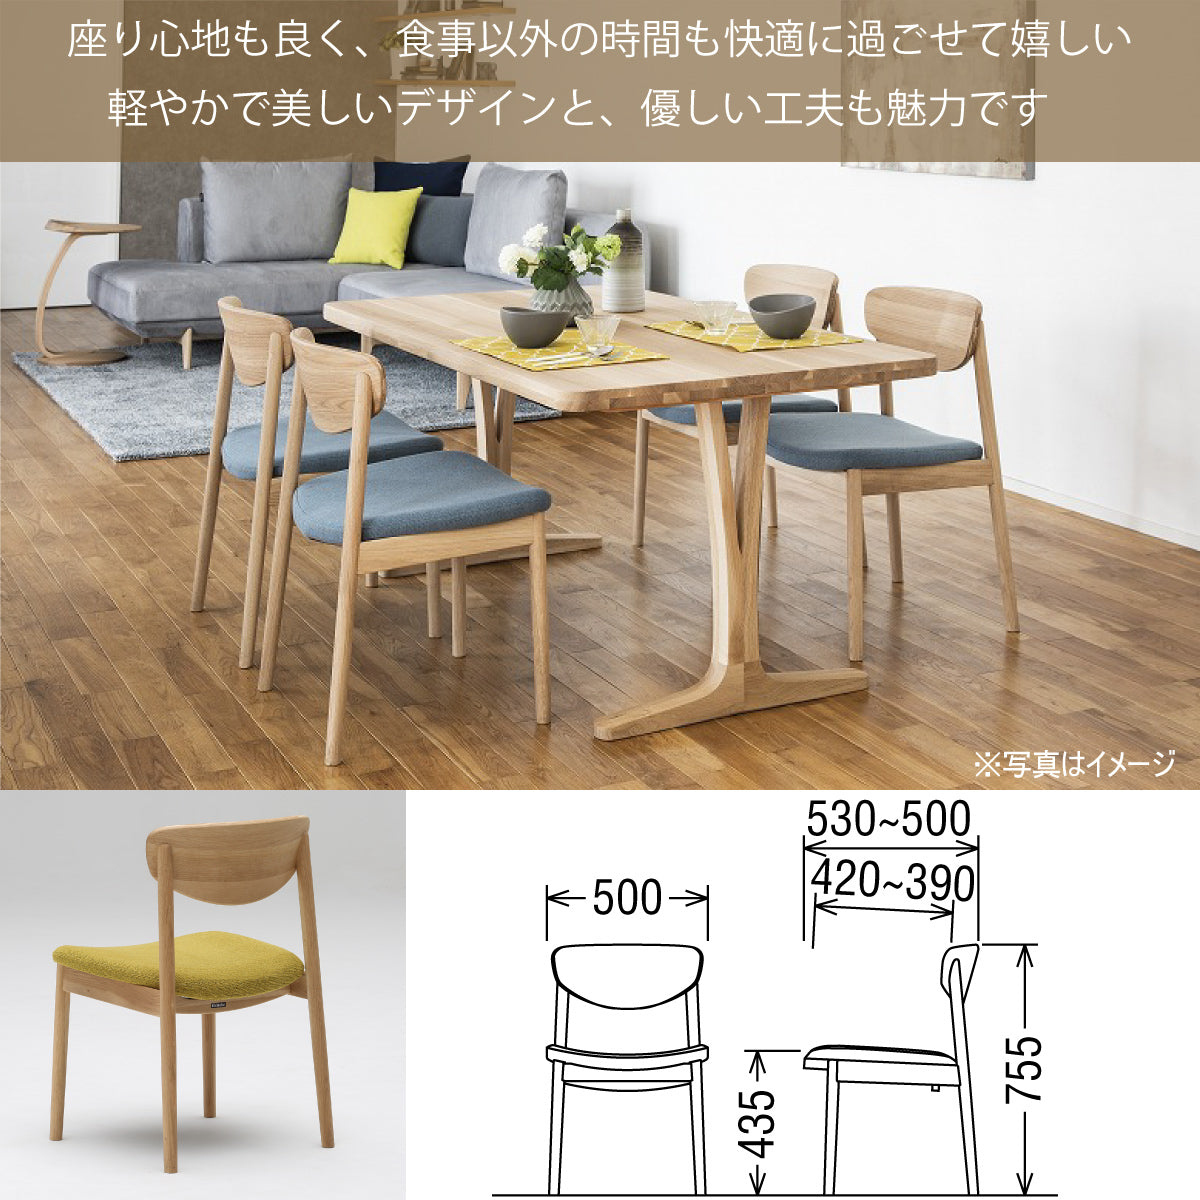 カリモク家具 カリモク CU6115 CU6165 食堂椅子 食卓椅子 ダイニングチェア 肘無し椅子 合成皮革張り 選べるカラー 日本製家具  正規取扱店 木製 単品